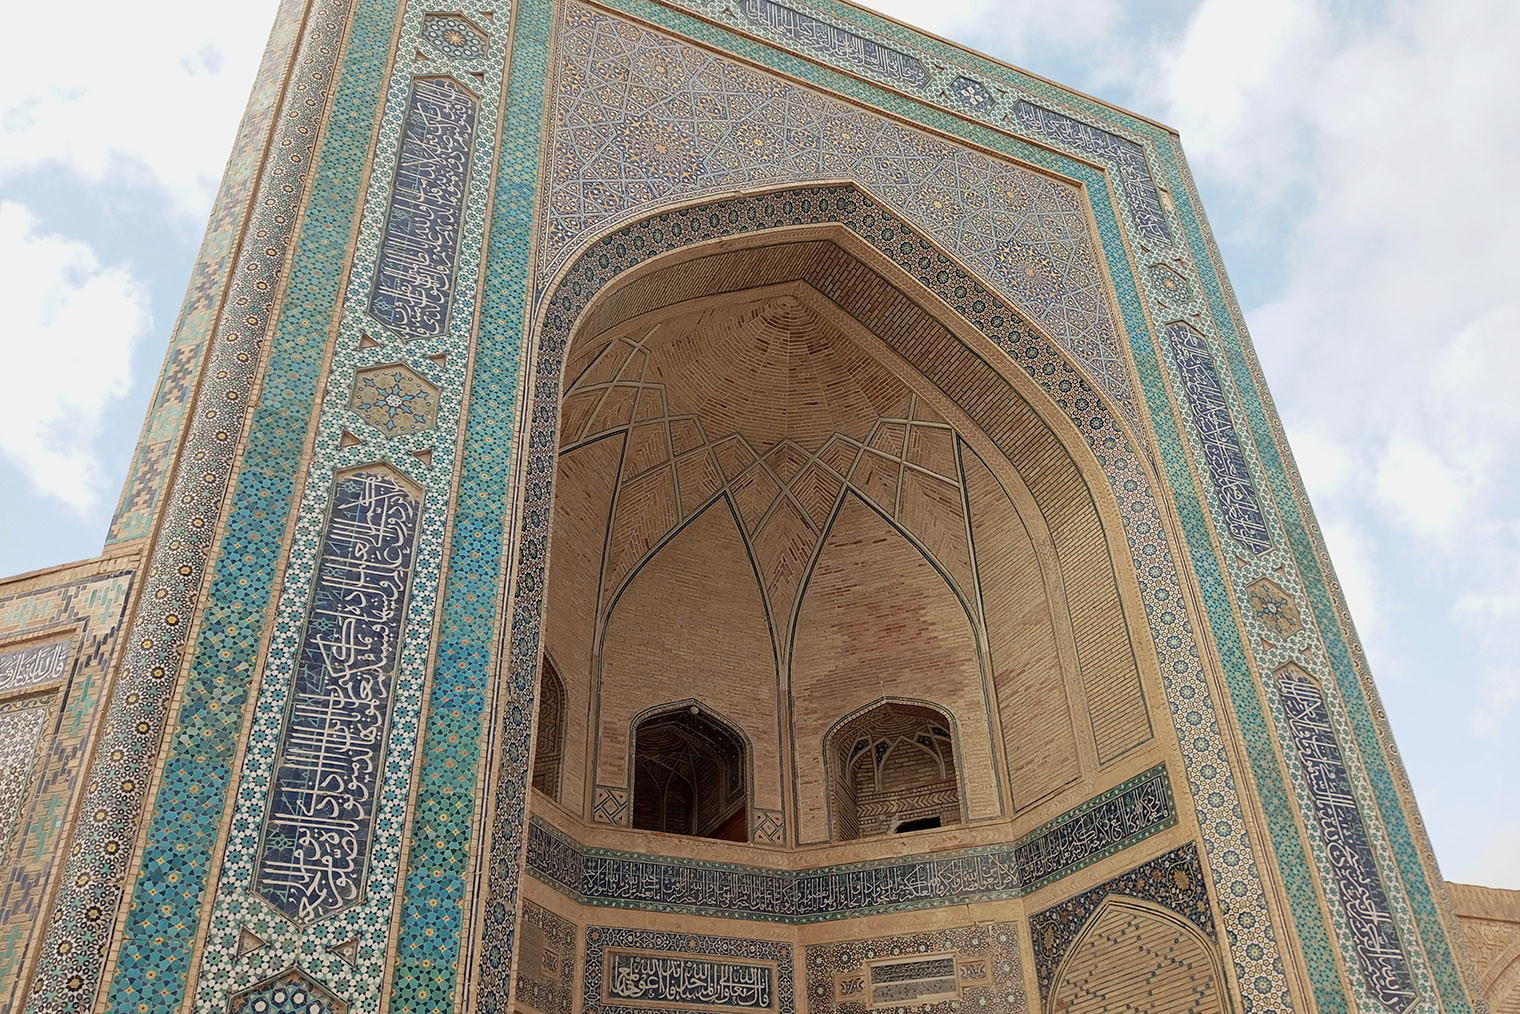 Входной портал мечети Калян богато украшен